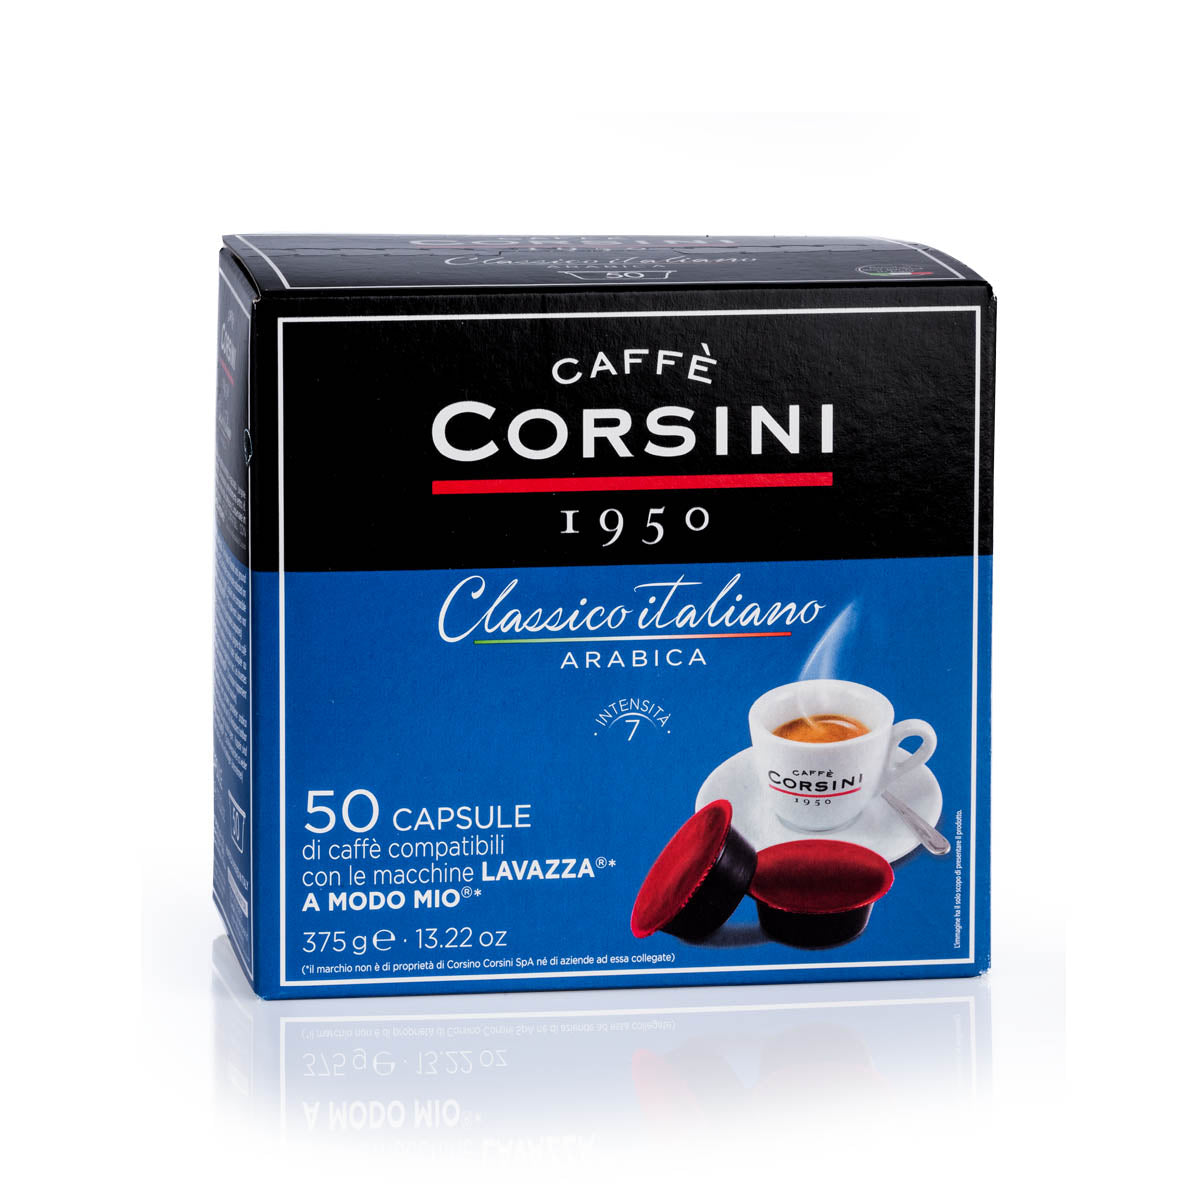 50 capsule di caffè compatibili Lavazza®* A Modo Mio®* per confezione | 100% Arabica Classico Italiano | Cartone da 4